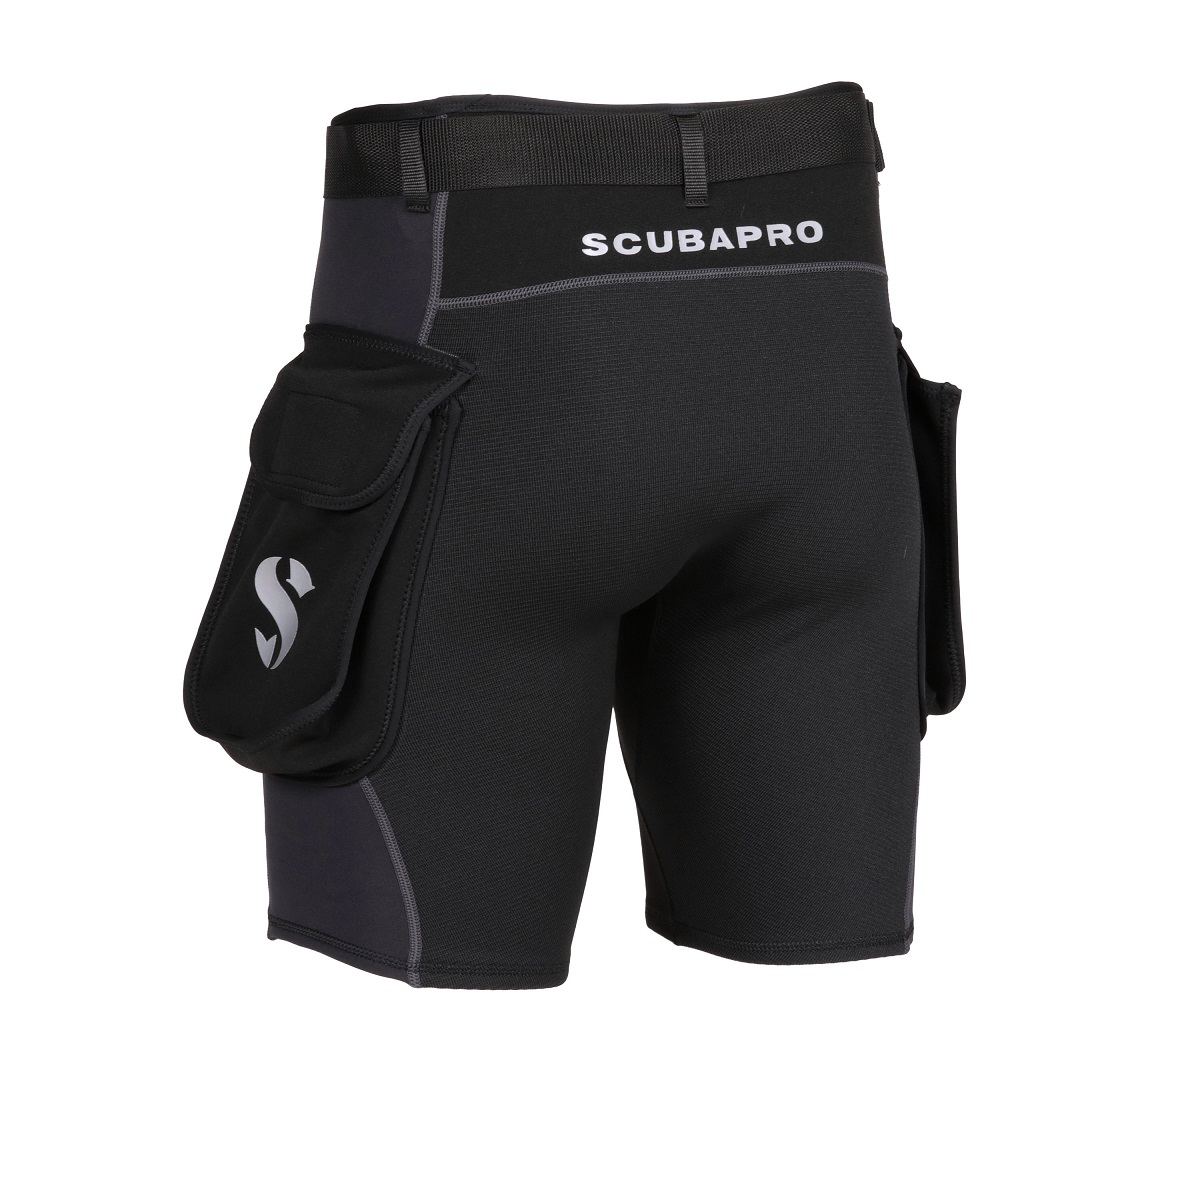 带工装口袋的 Scubapro 混合短裤